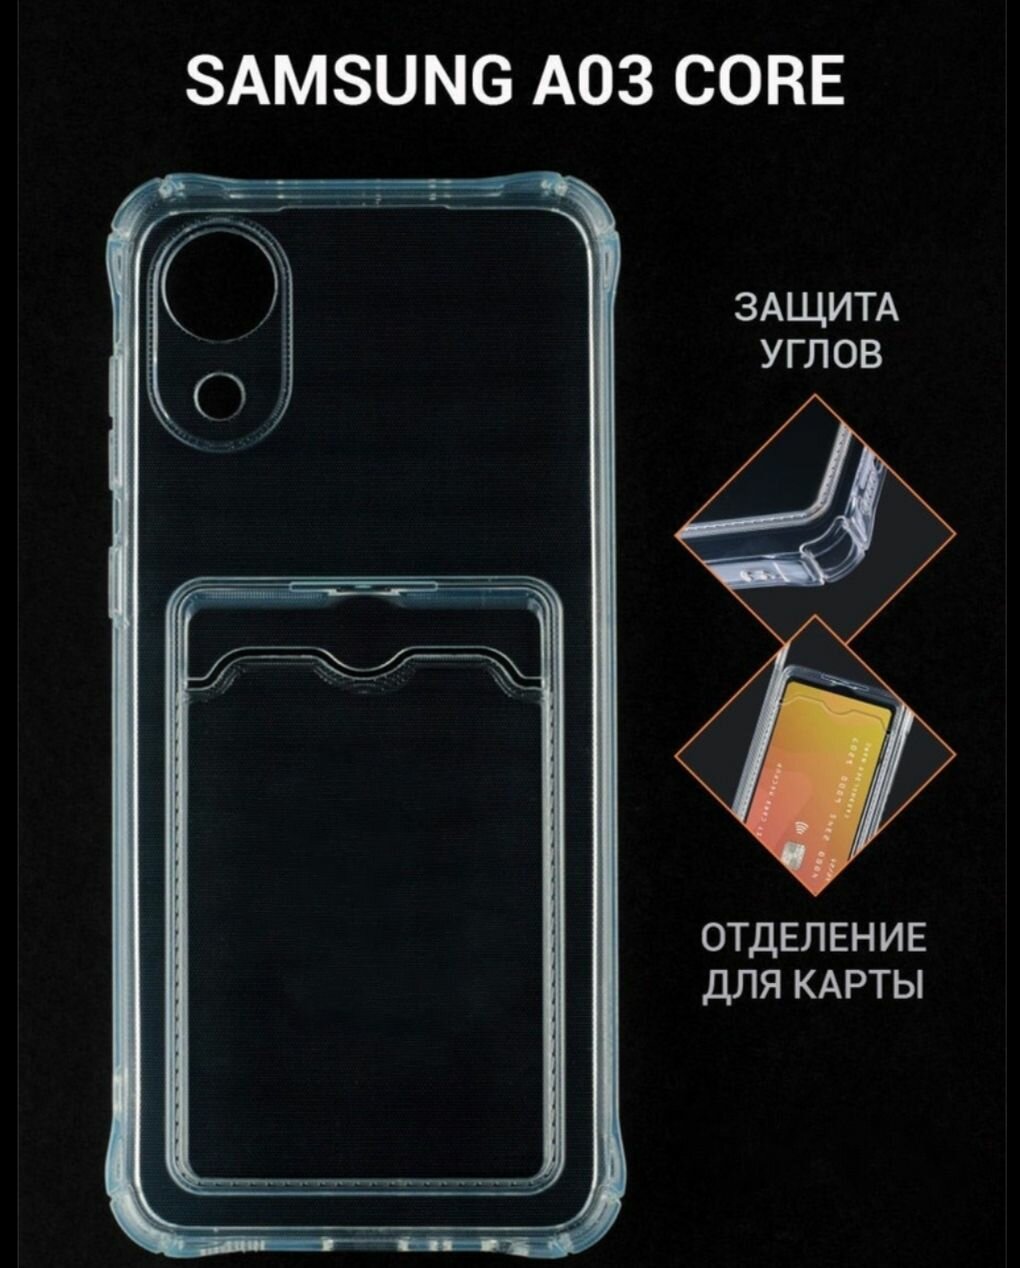 Samsung Galaxy A3 core силиконовый прозрачный чехол для Самсунг галакси а3 кор бампер накладка с защитой камеры и отделением для карты